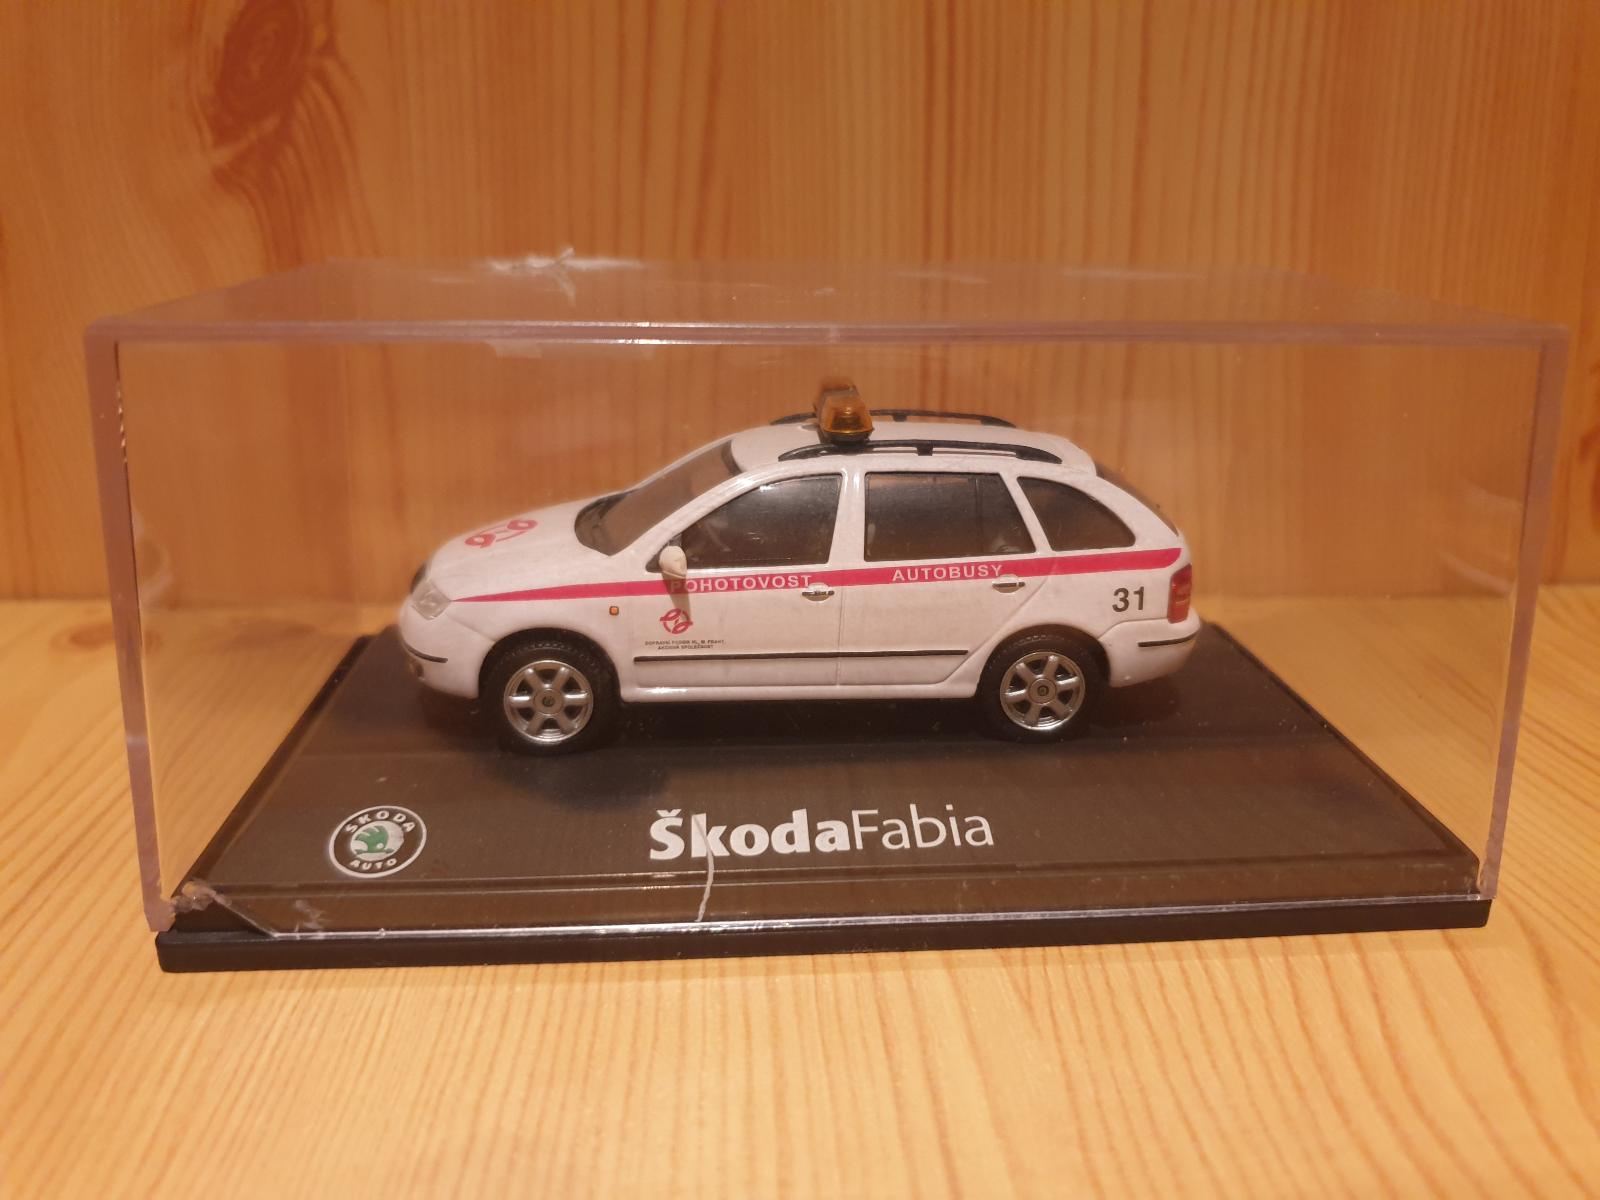 Škoda Fabia, Pohotovosť autobusy, 1:43 Abrex - Modely automobilov